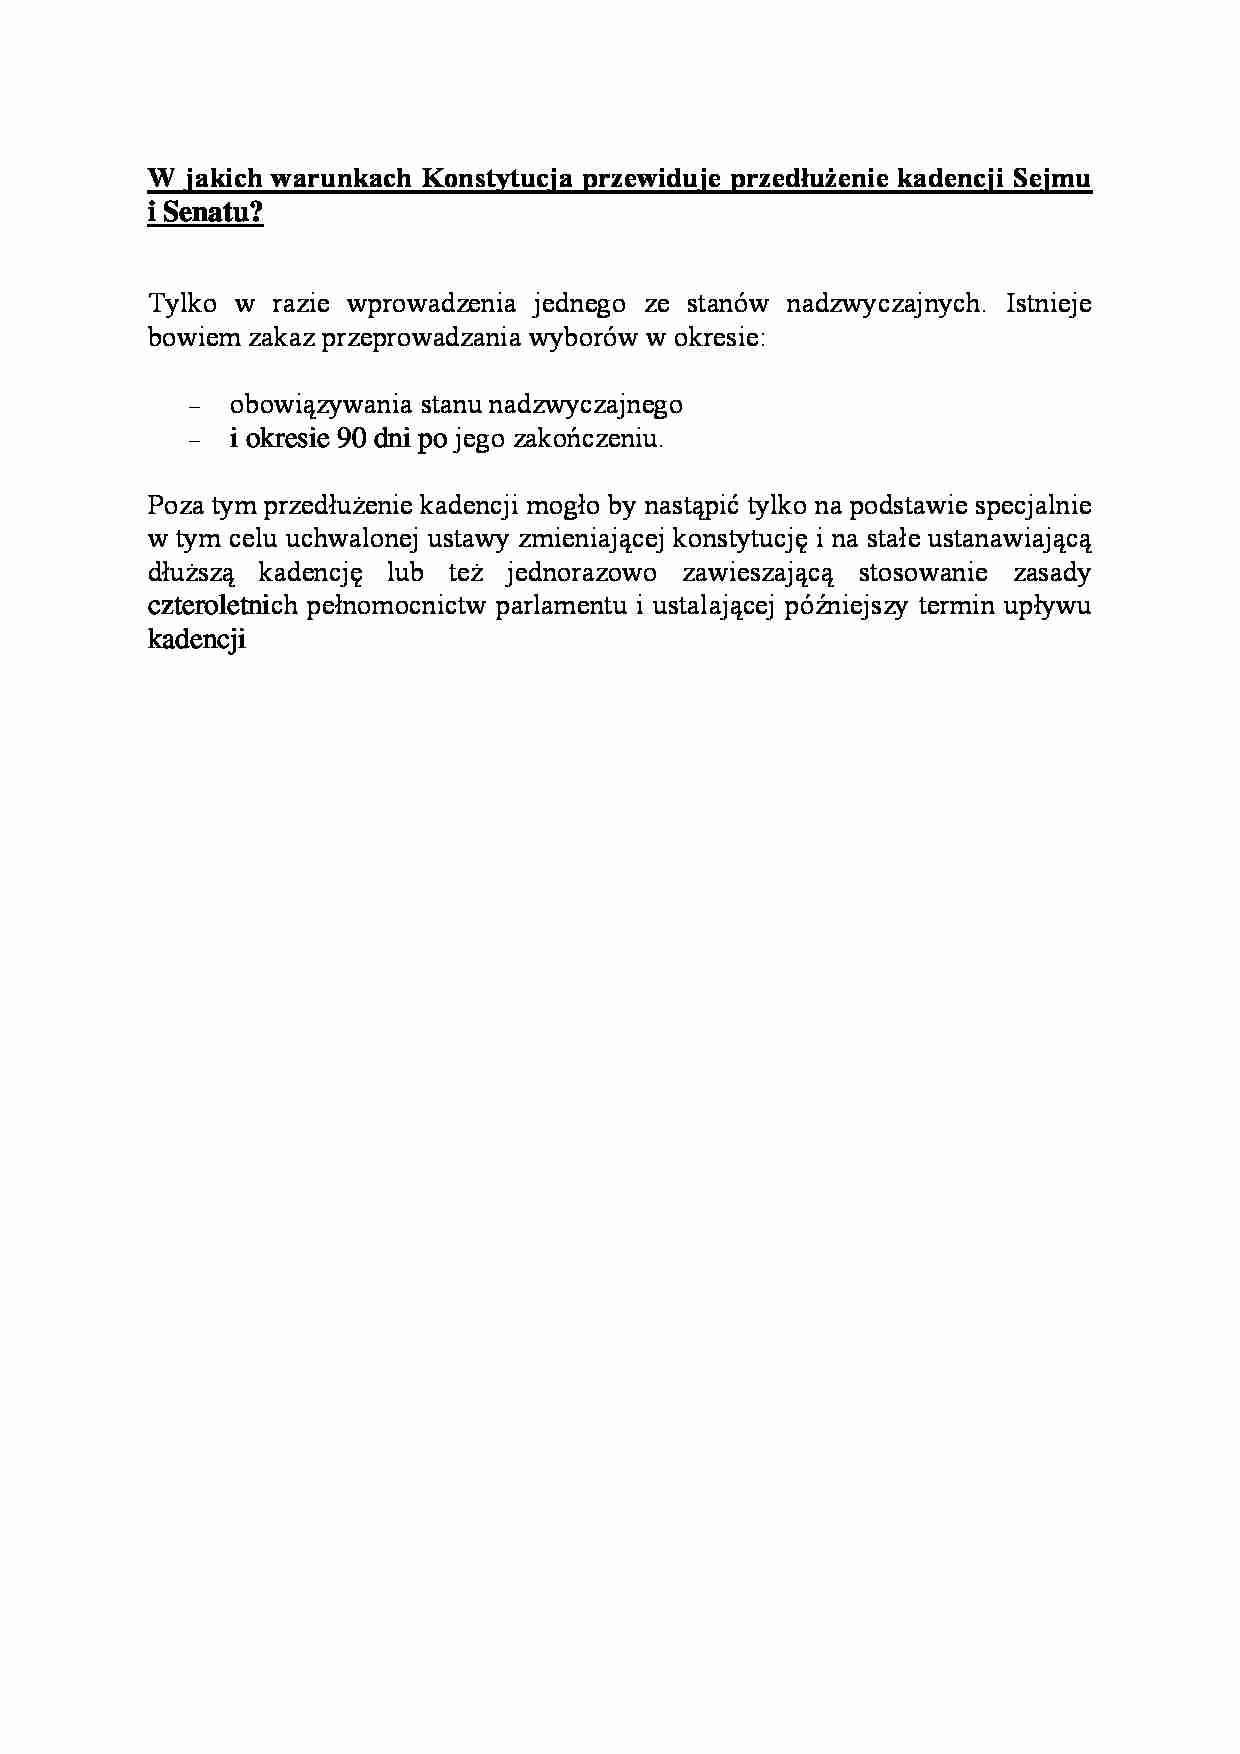 przedłużenie kadencji Sejmu i Senatu - omówienie - strona 1